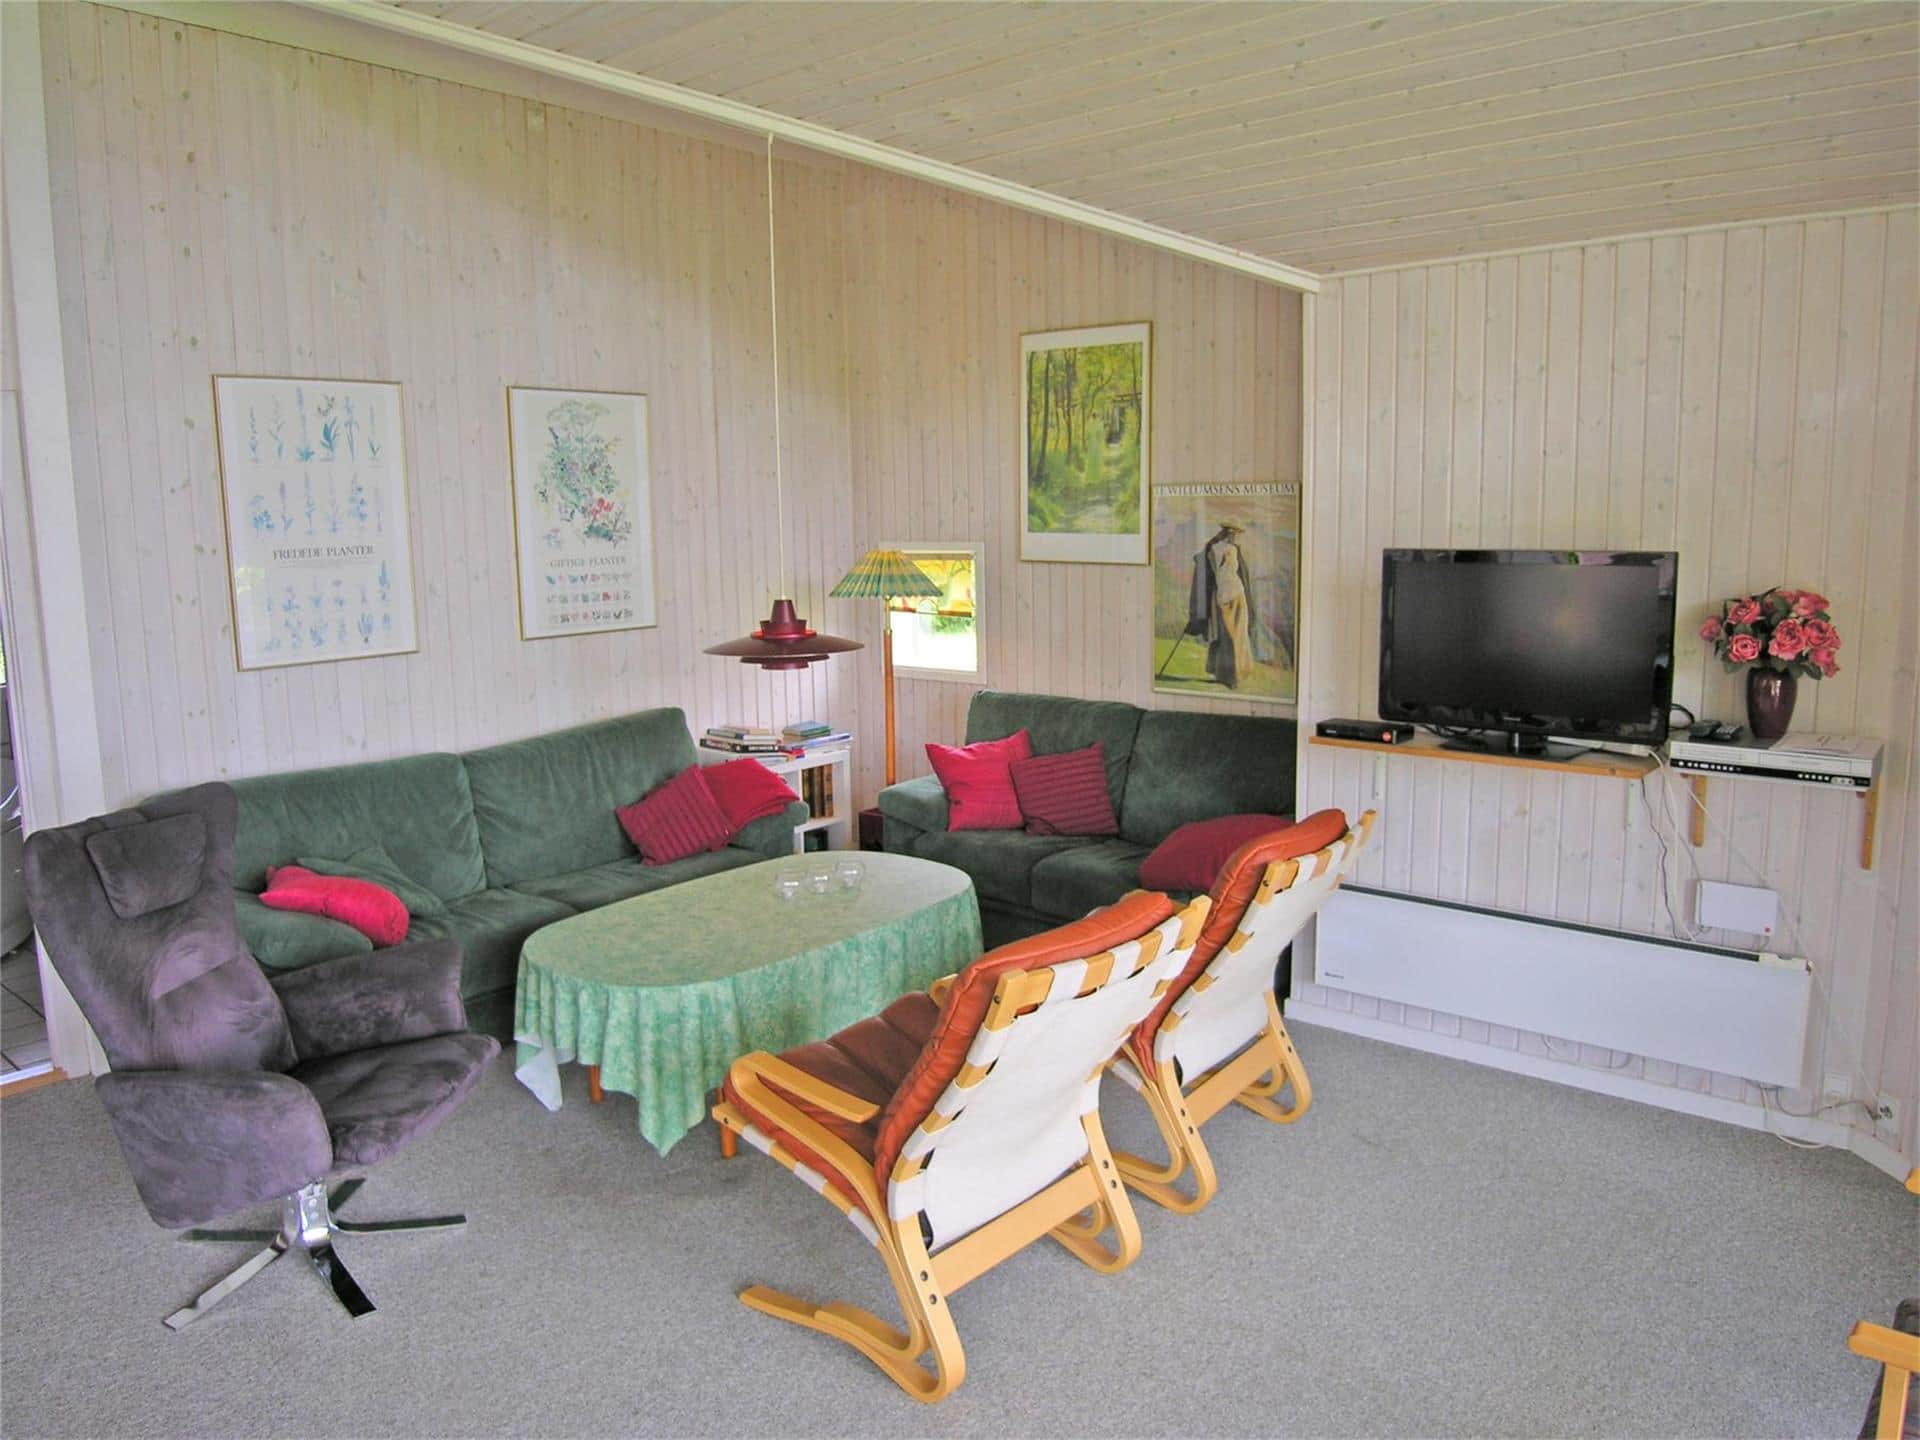 Wohnzimmer 1 Bild 3-19 Ferienhaus 40515, Pøt Strandby 400, DK - 7130 Juelsminde